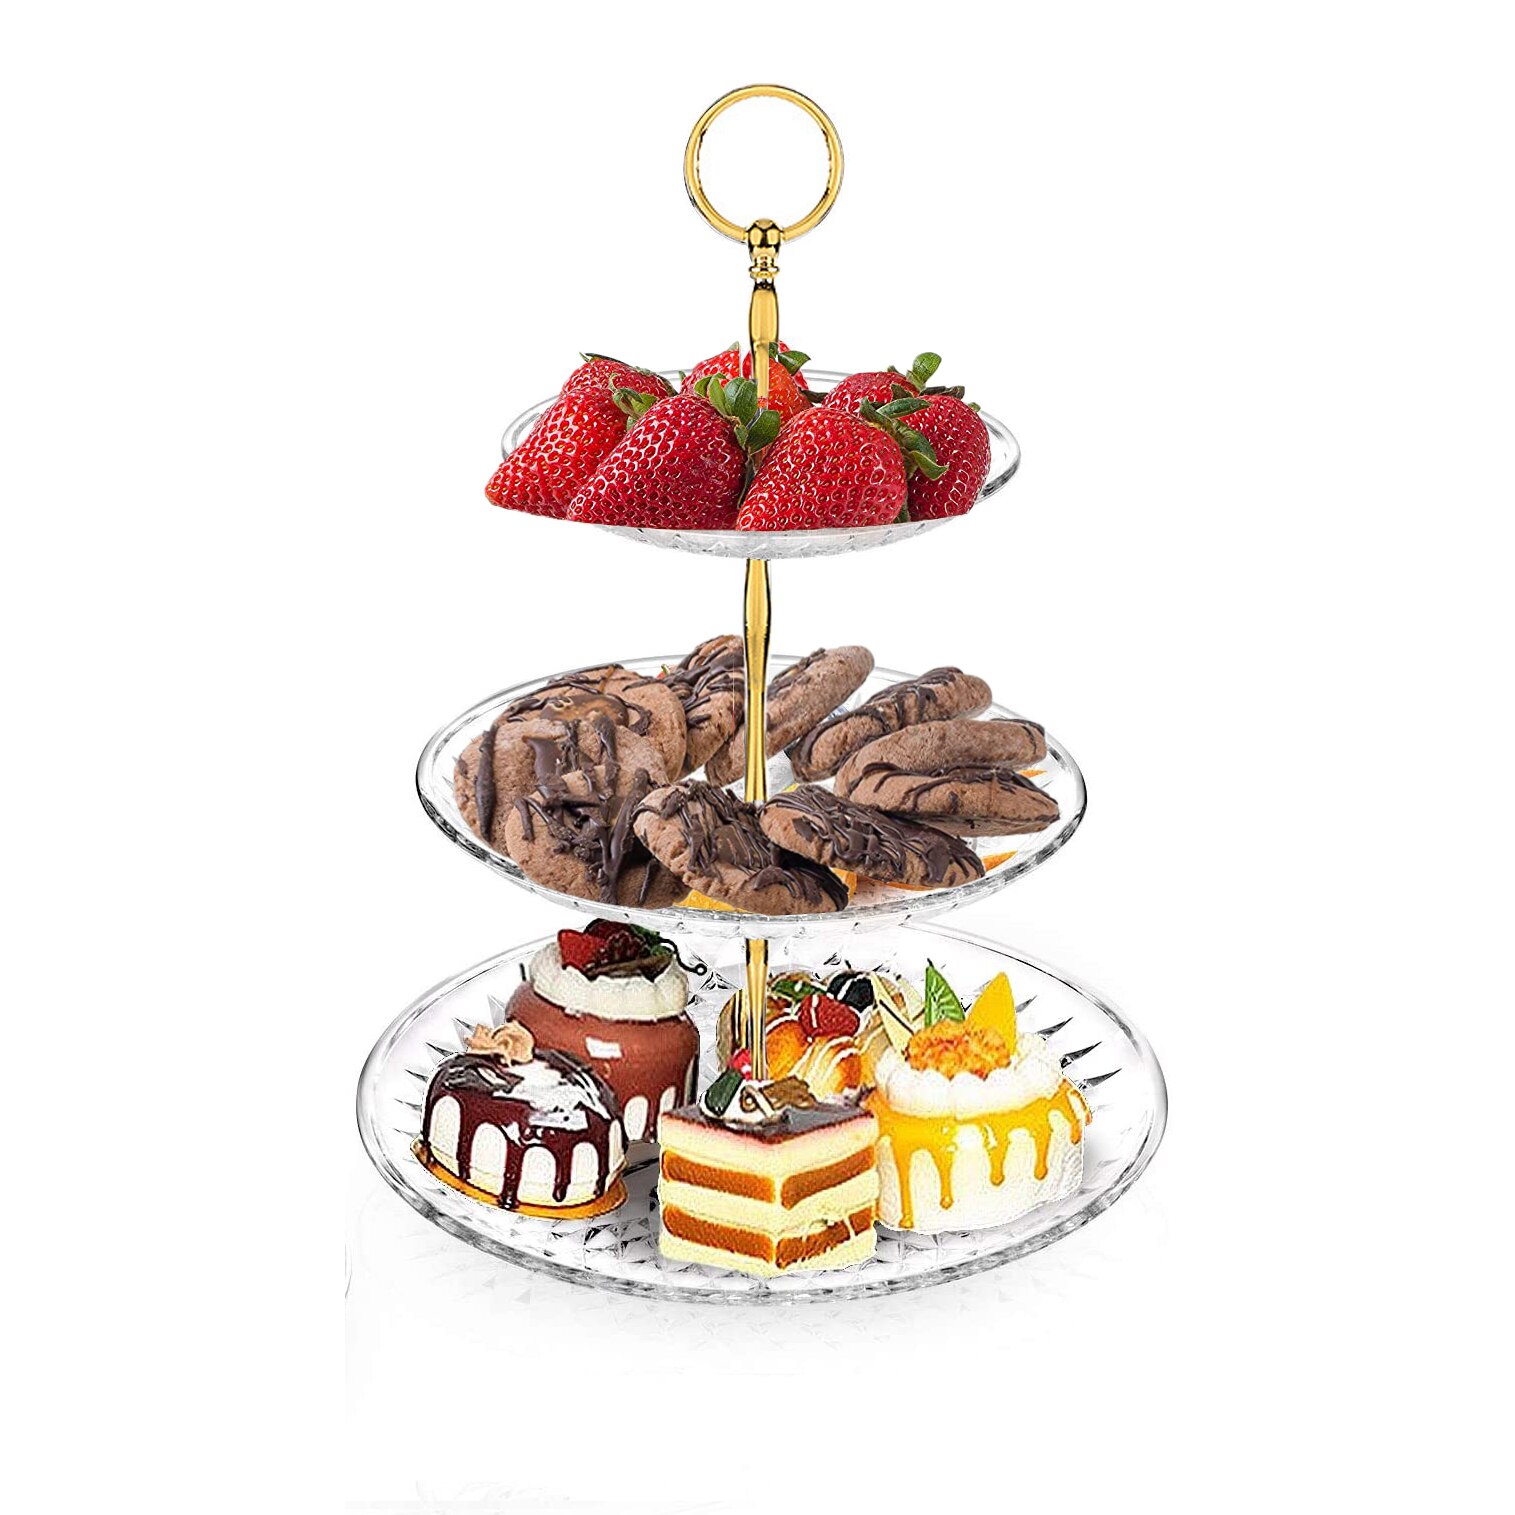 Cake Display Stand Voor Evenementen 3 Tier Fruit Macaron Cupcake Dessert Stand Decoratie Afternoon Tea Verjaardag Bruiloft